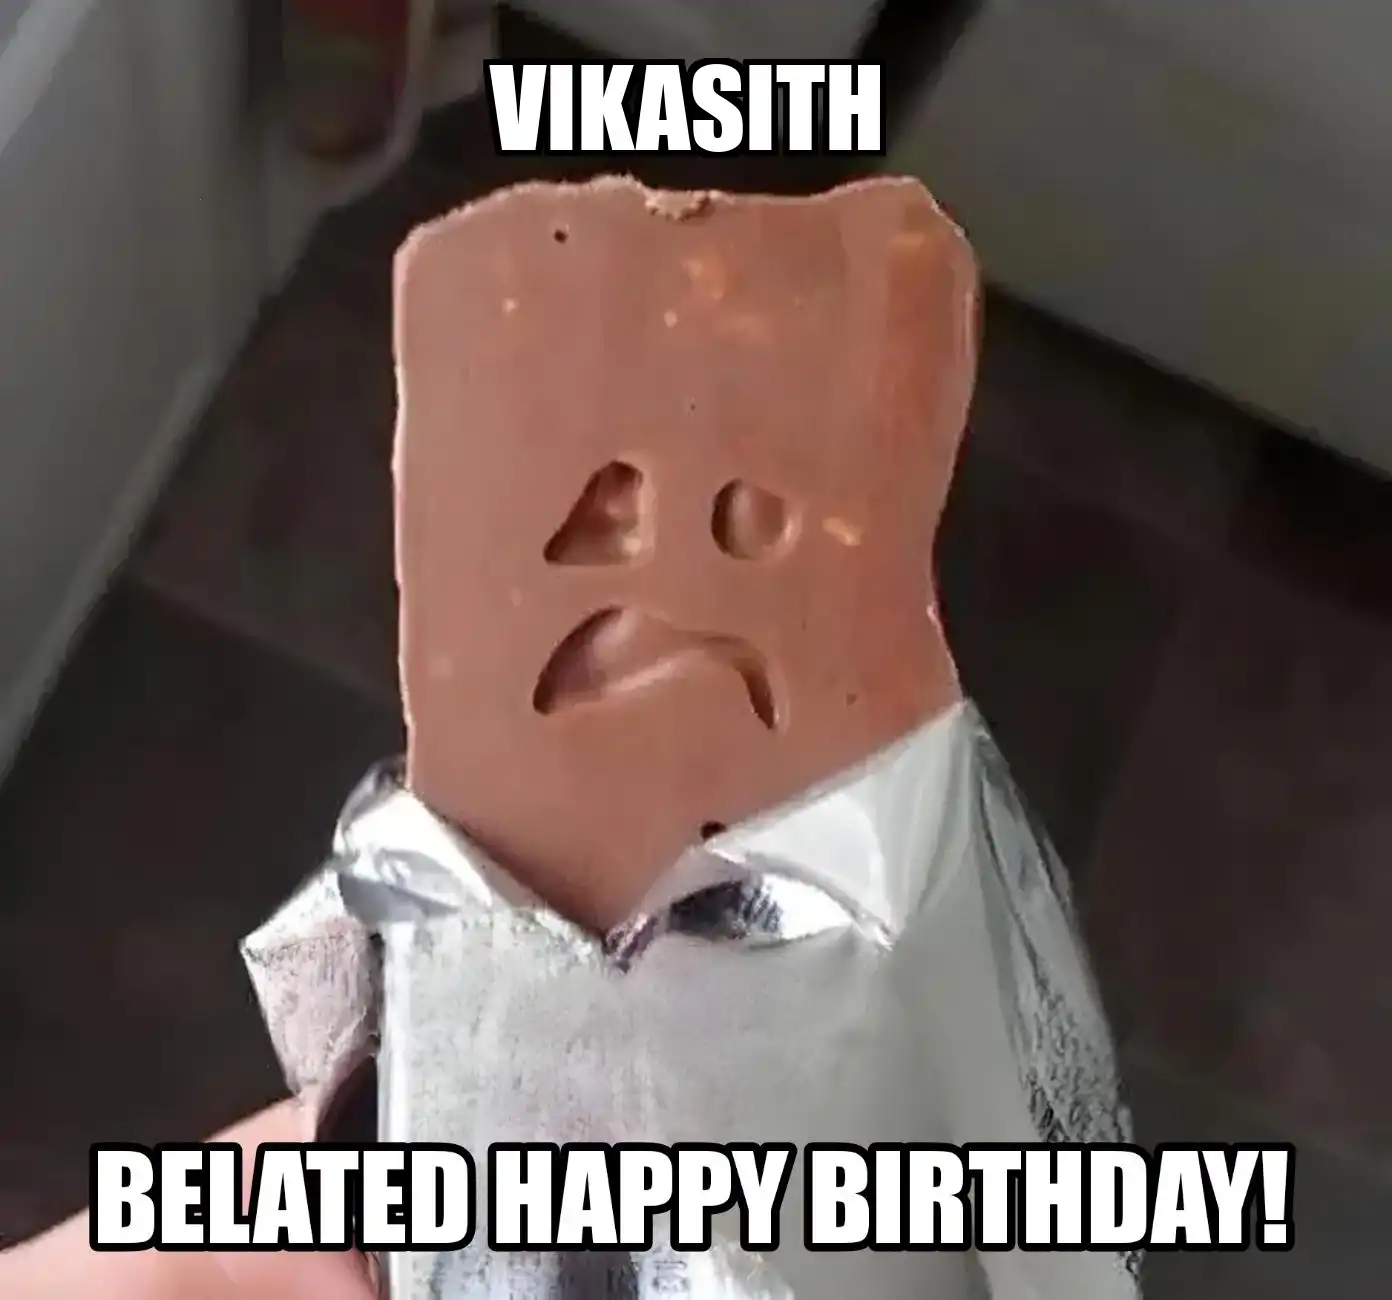 Happy Birthday Vikasith Belated Happy Birthday Meme